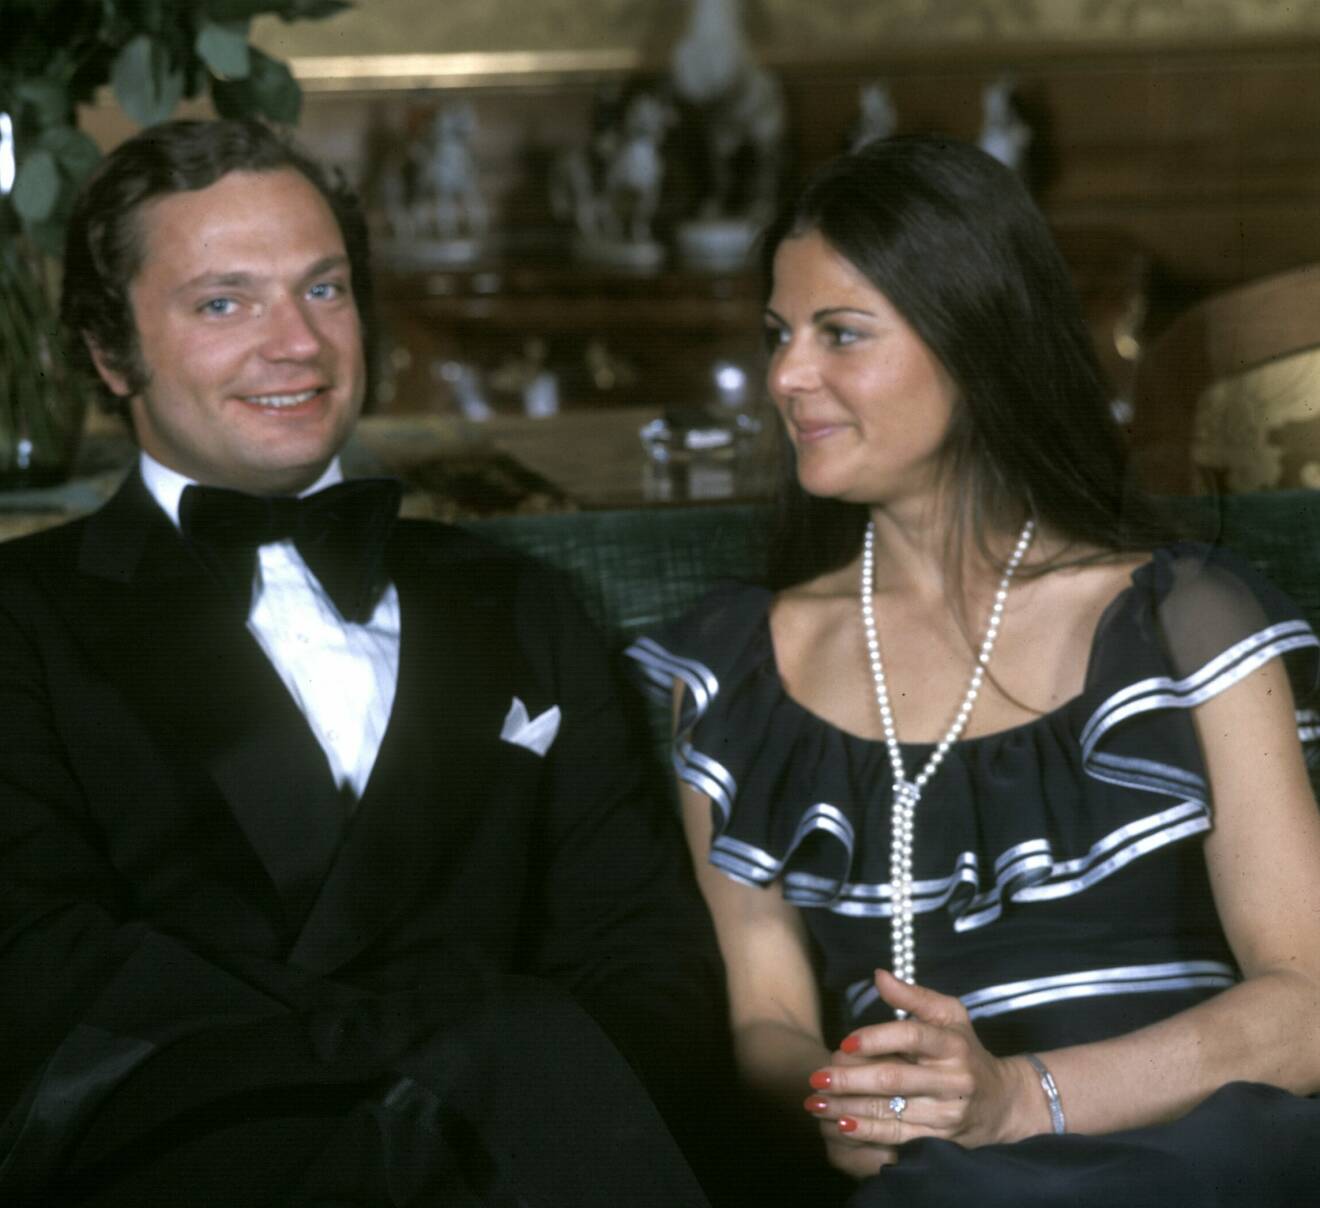 Kungen och drottning Silvia, då Silvia Sommerlath, nyförlovade 1976